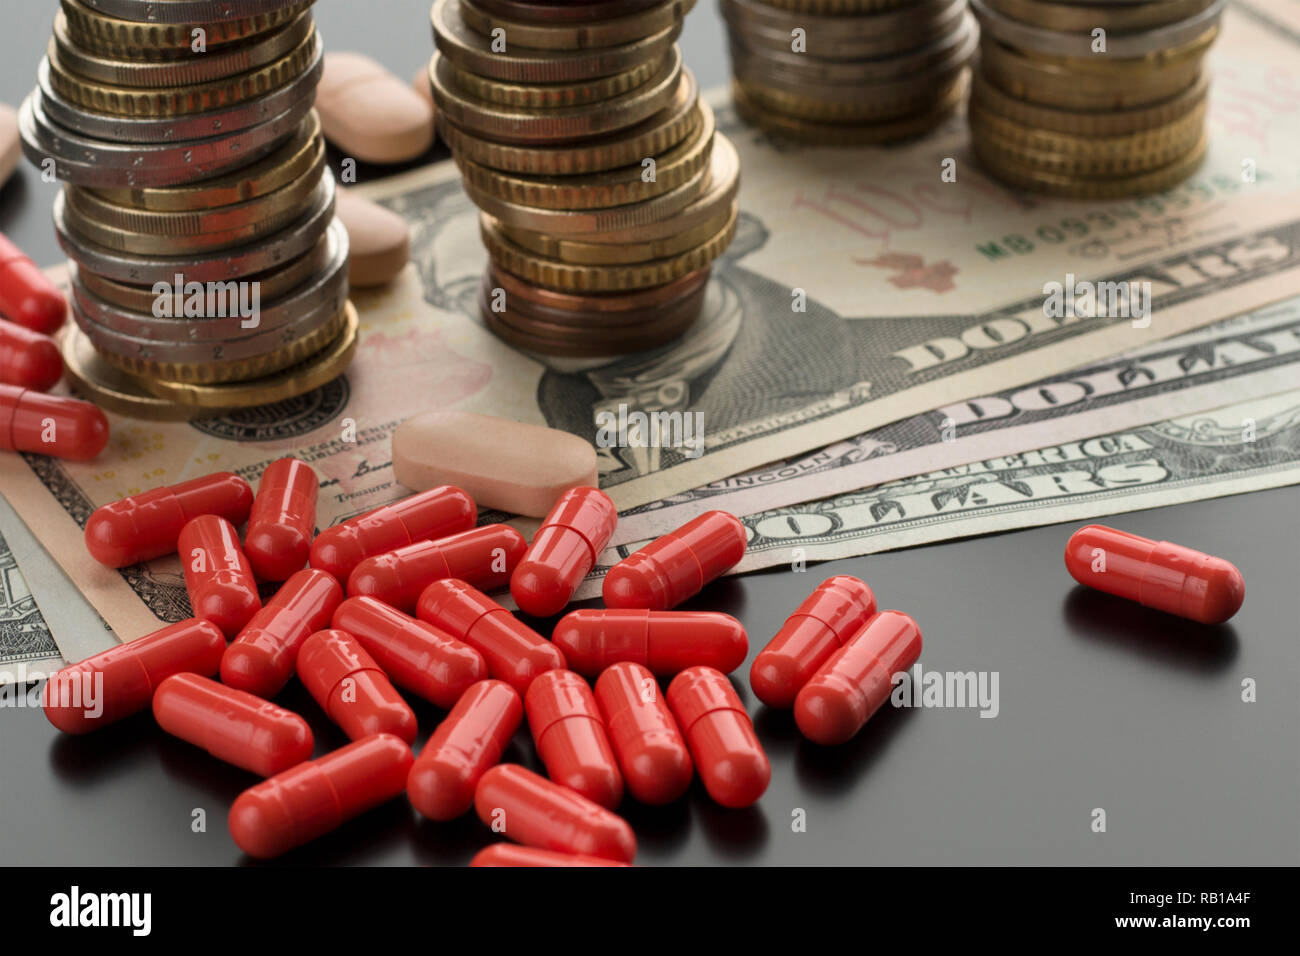 Red pillole o capsule e dollaro banconote, pile di monete sullo sfondo. Argomento delle spese mediche nel bilancio di famiglia, la cura della salute Foto Stock